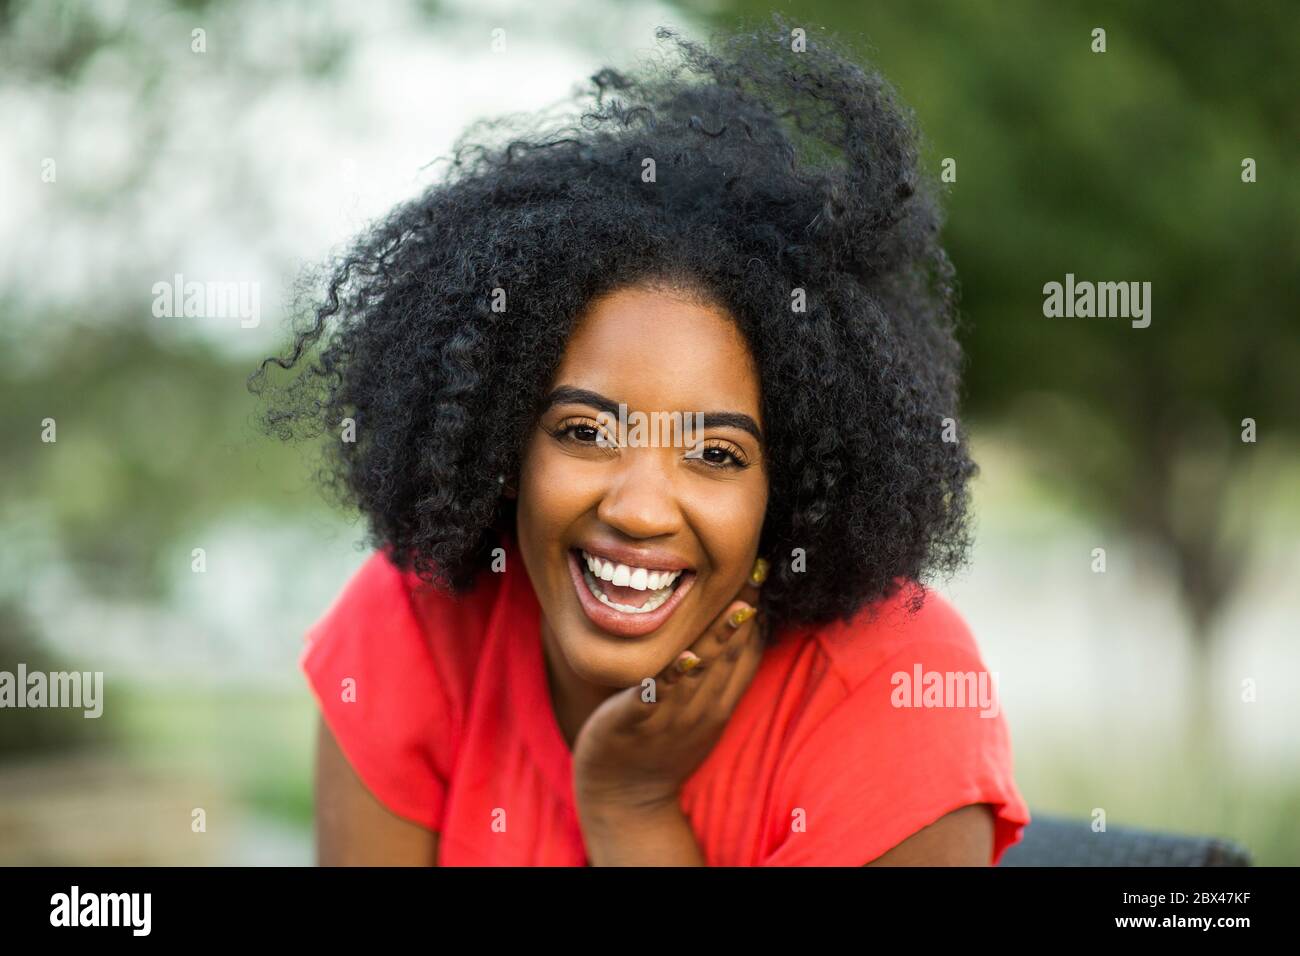 Gerne zuversichtlich African American woman smiling außerhalb. Stockfoto